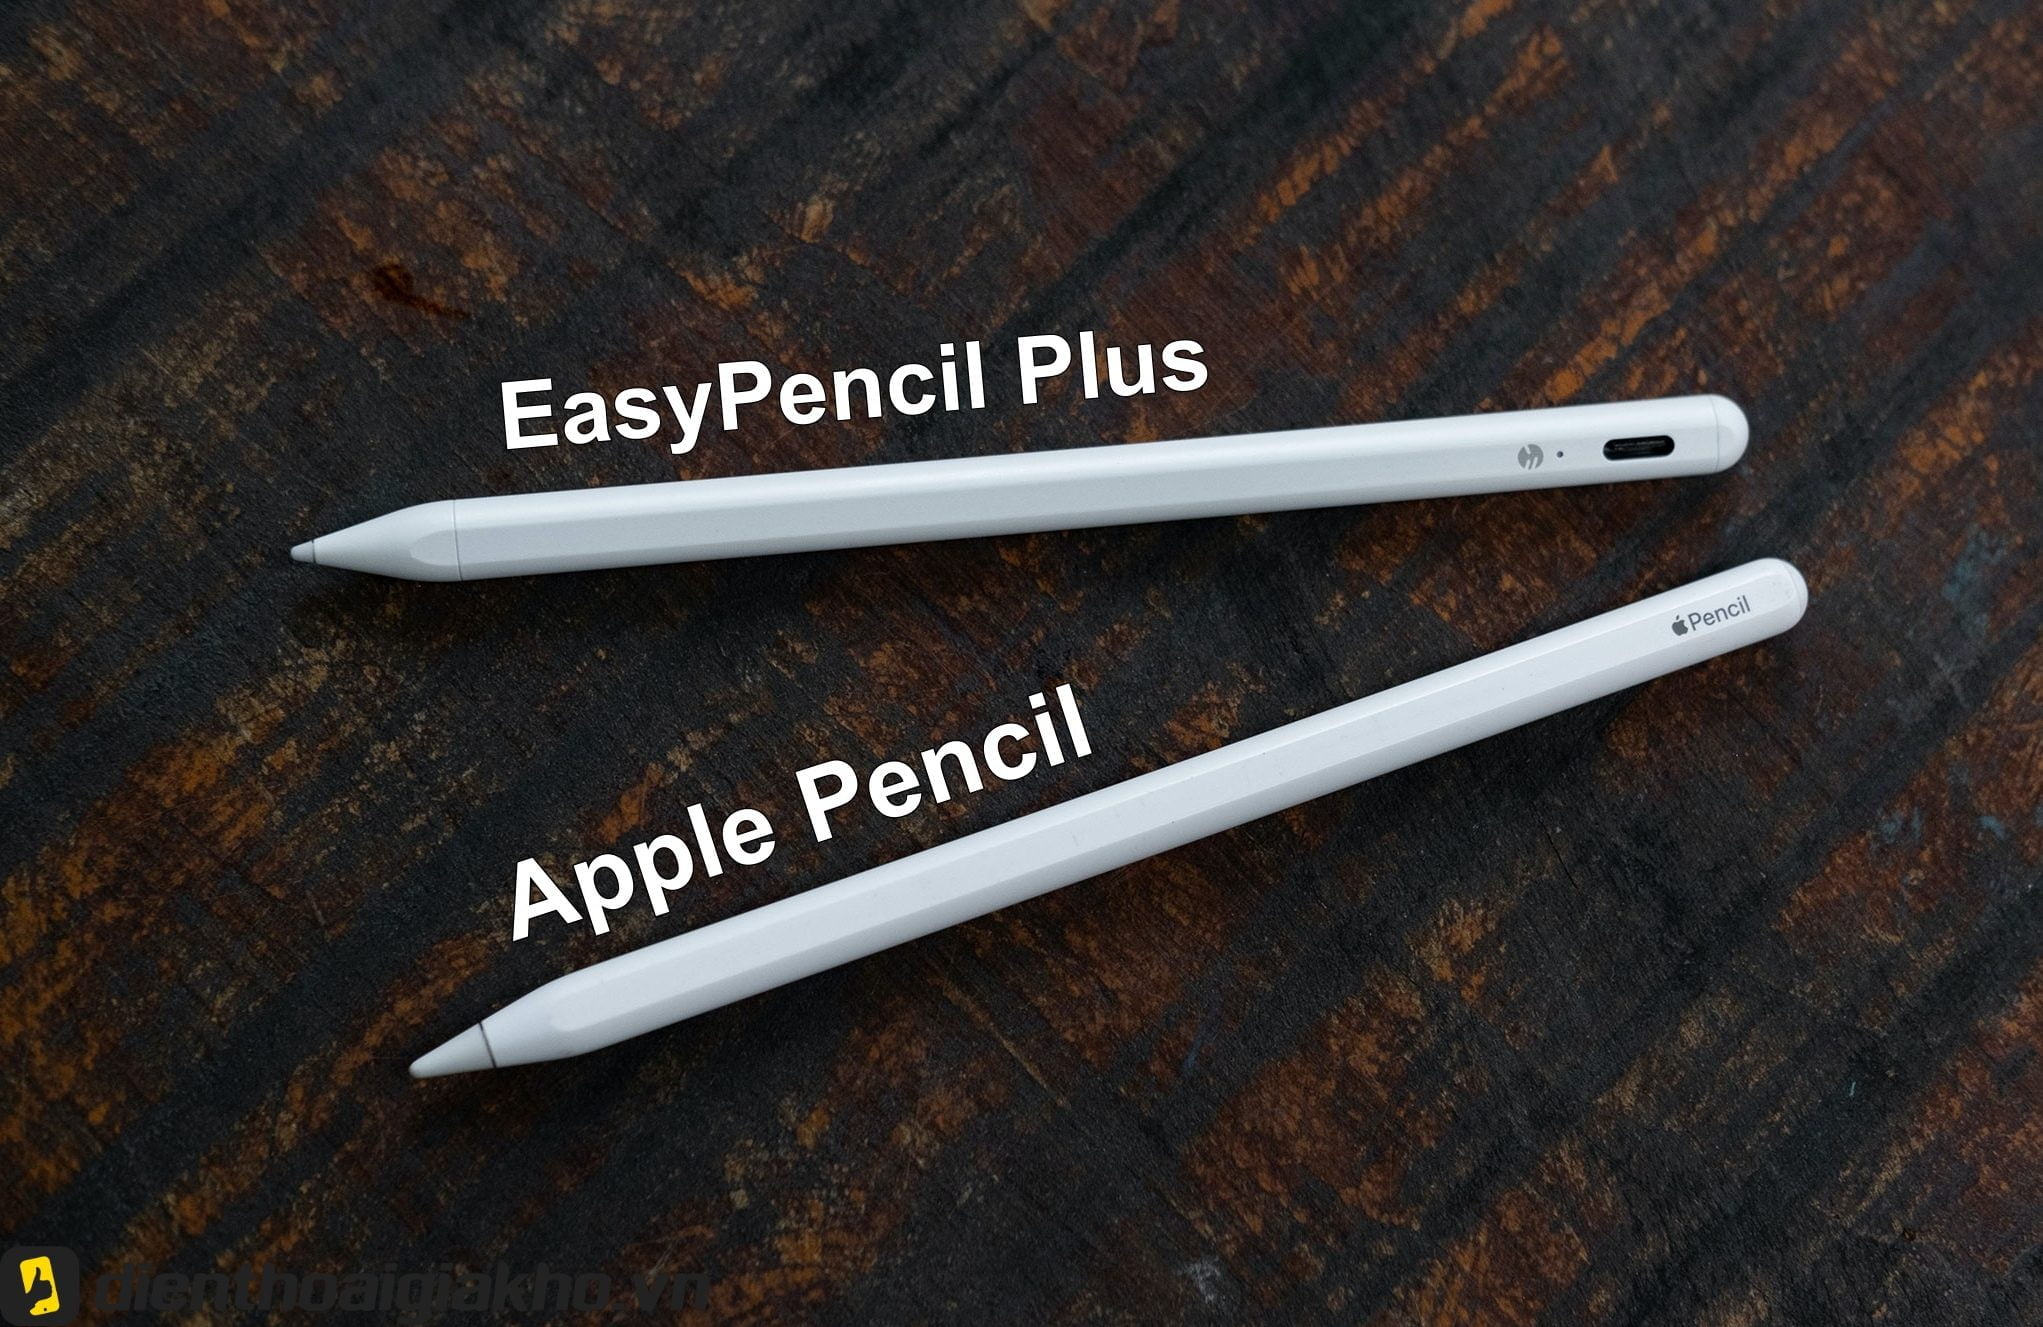 Thiết kế sang trọng của Bút Cảm Ứng Cho Ipad Easy Pencil Pro 3 có nhiều điểm tương đồng vơi Apple Pencil 2